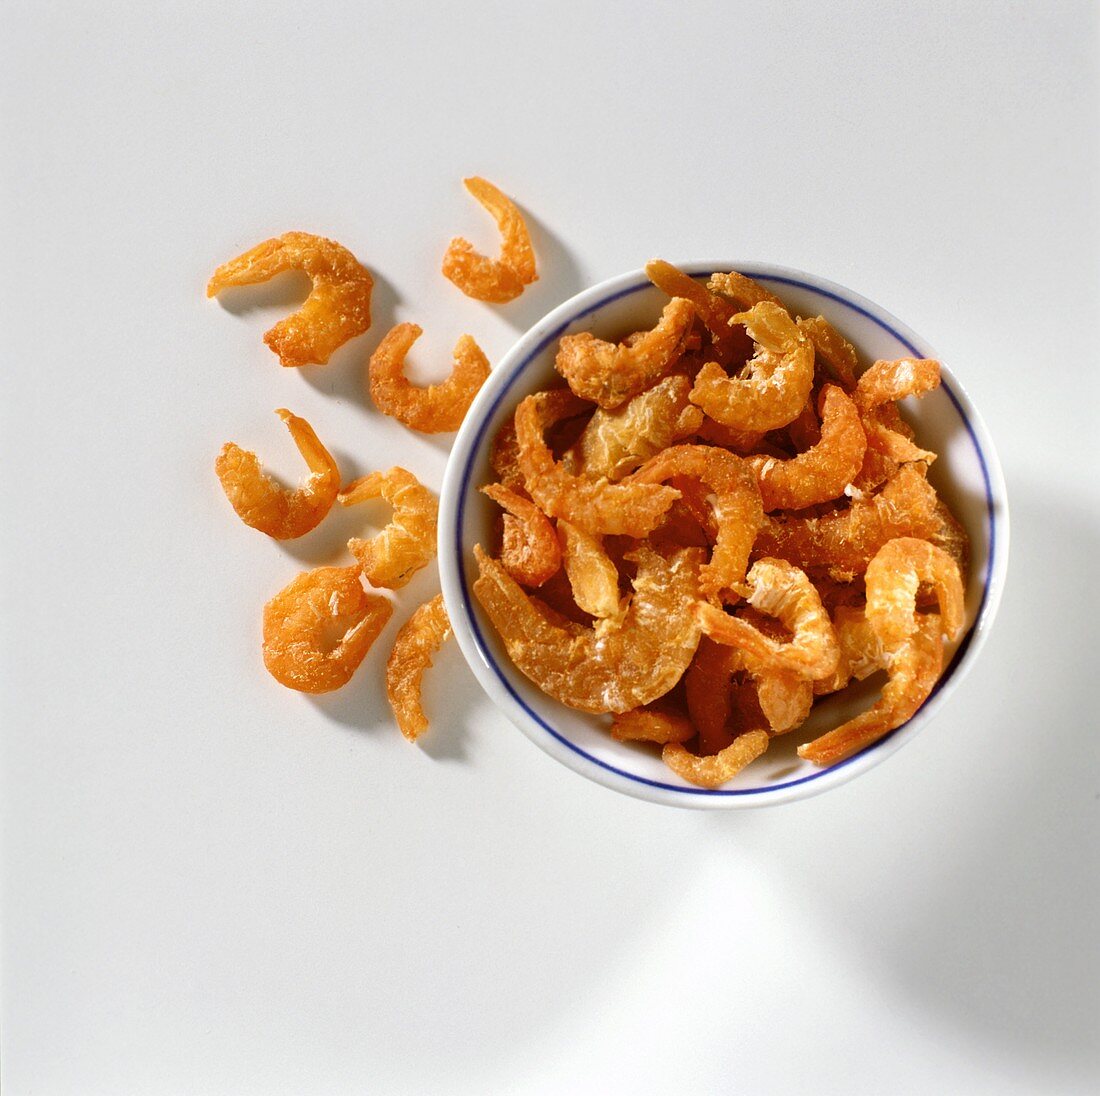 Dried shrimps